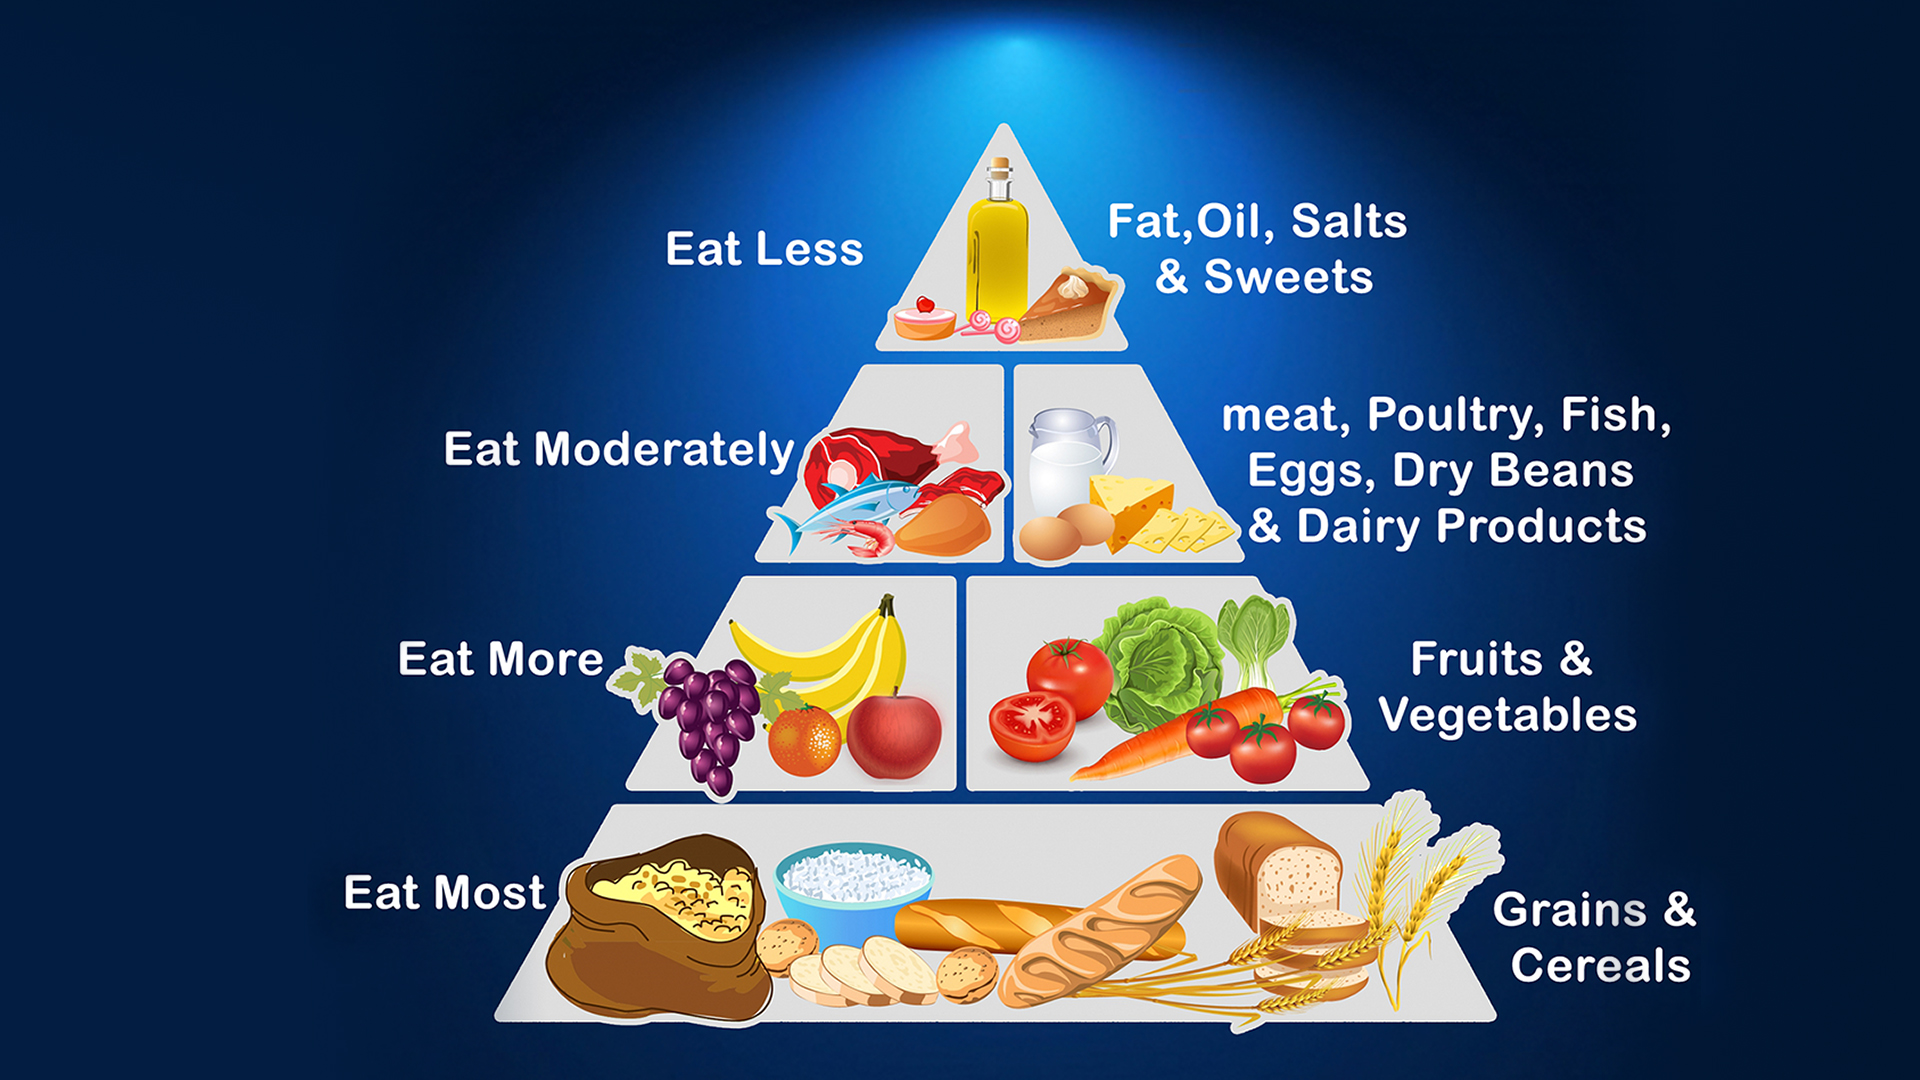 bodybuilding nutrition pyramid